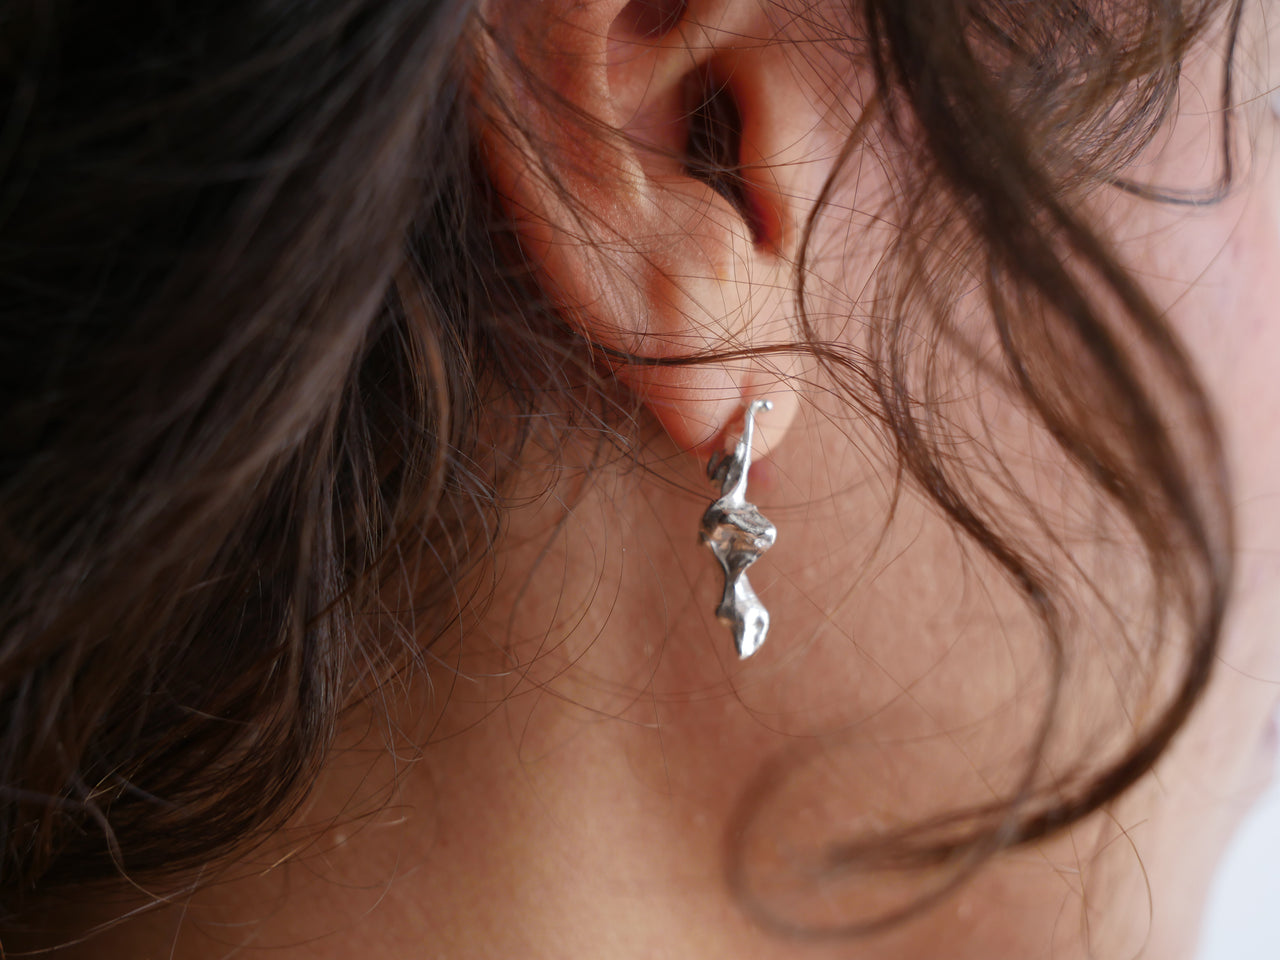 Ebb & flow earrings